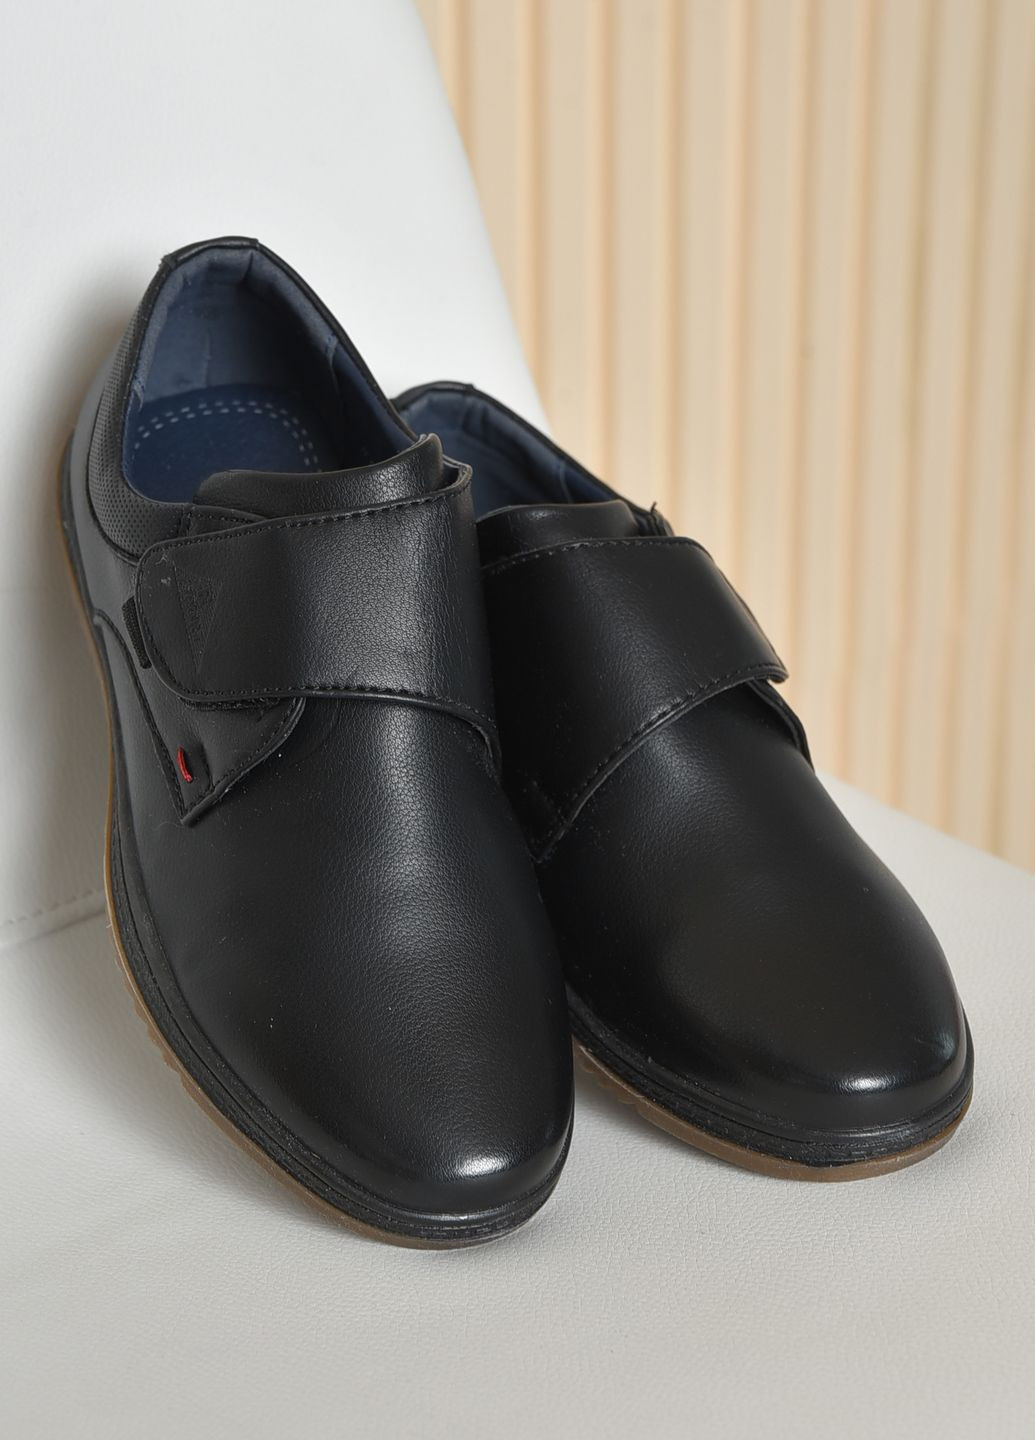 Черные туфли детские для мальчика черного цвета на липучке Let's Shop